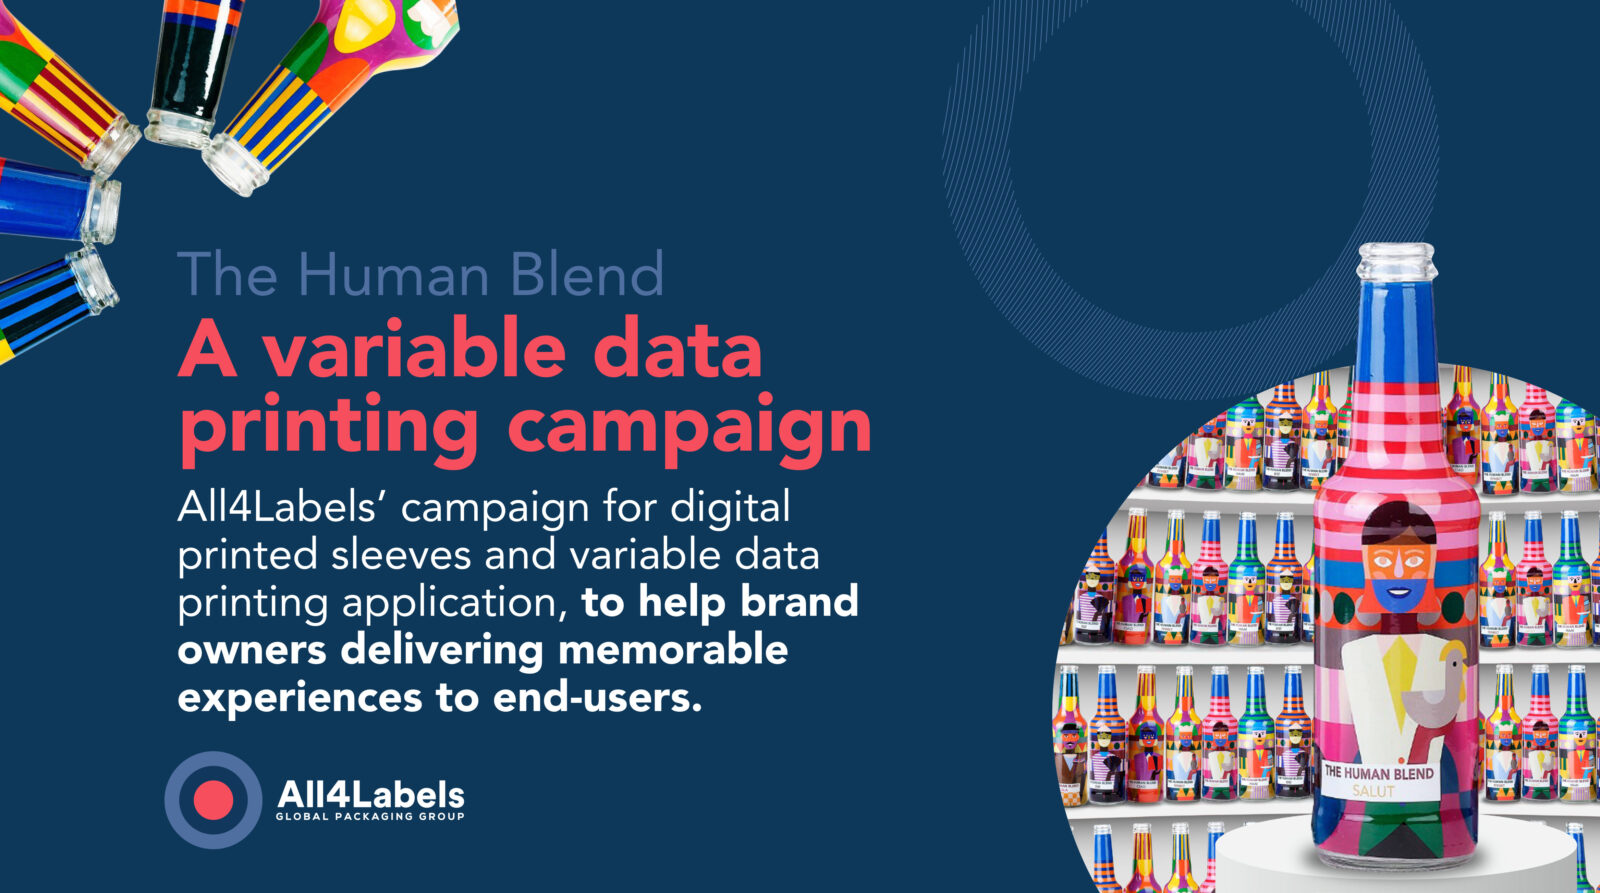 All4Labels unterstützt Marken dabei, durch Digitalisierung und variablen Datendruck herausragende Erlebnisse für die Verbraucher zu schaffen